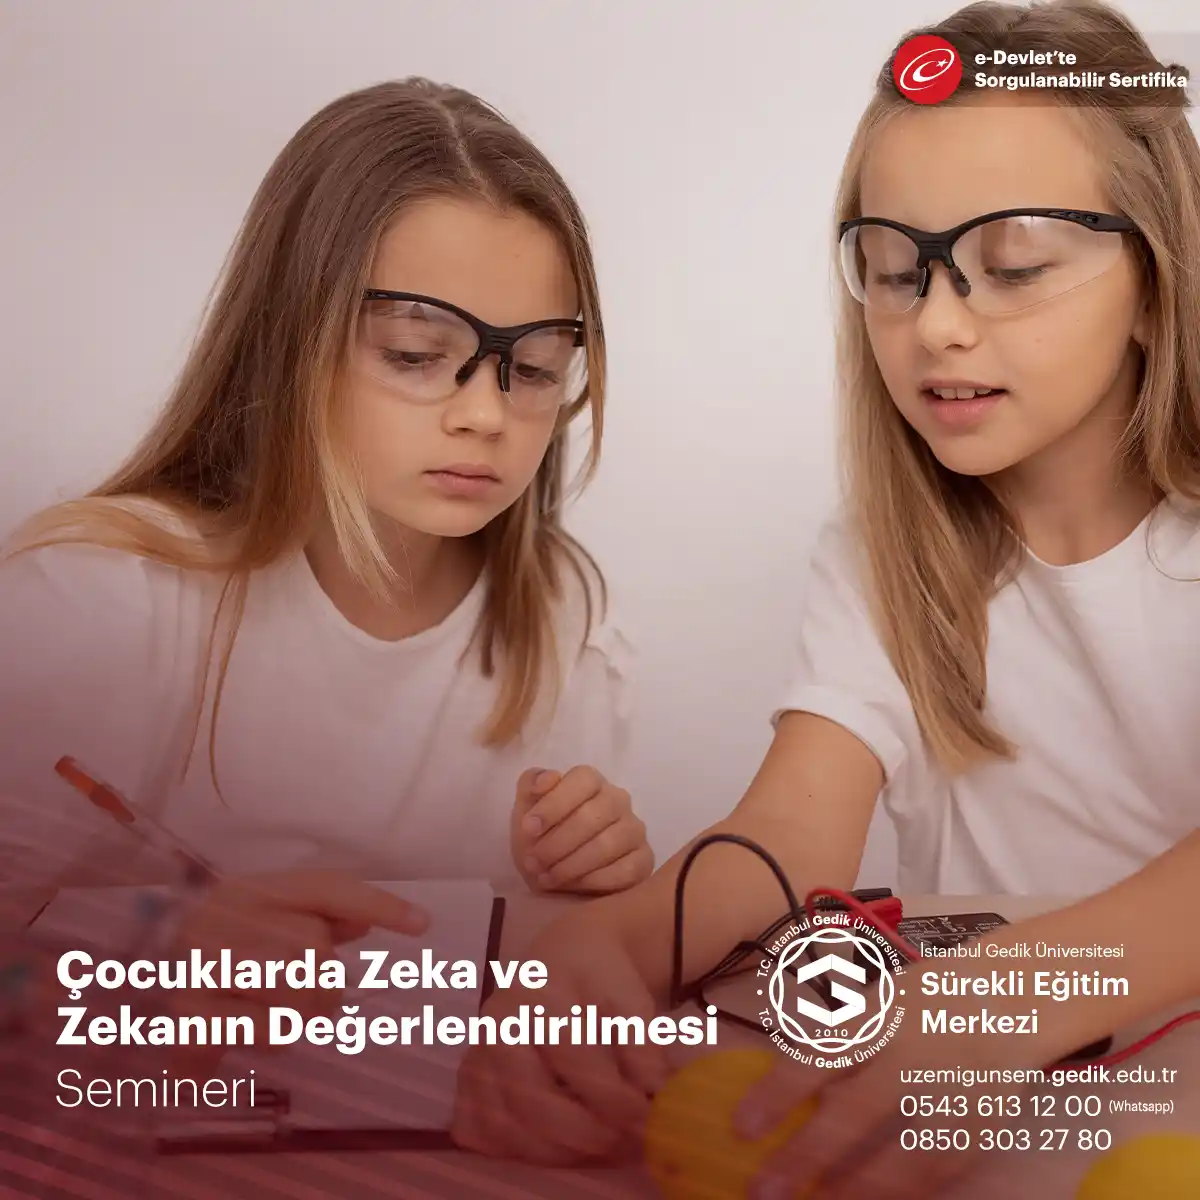 Çocuklarda Zeka ve Zekanın Değerlendirilmesi SemineriZeka, insanların düşünme, öğrenme, problem çözme ve akıl yürütme becerilerini ifade eder. 